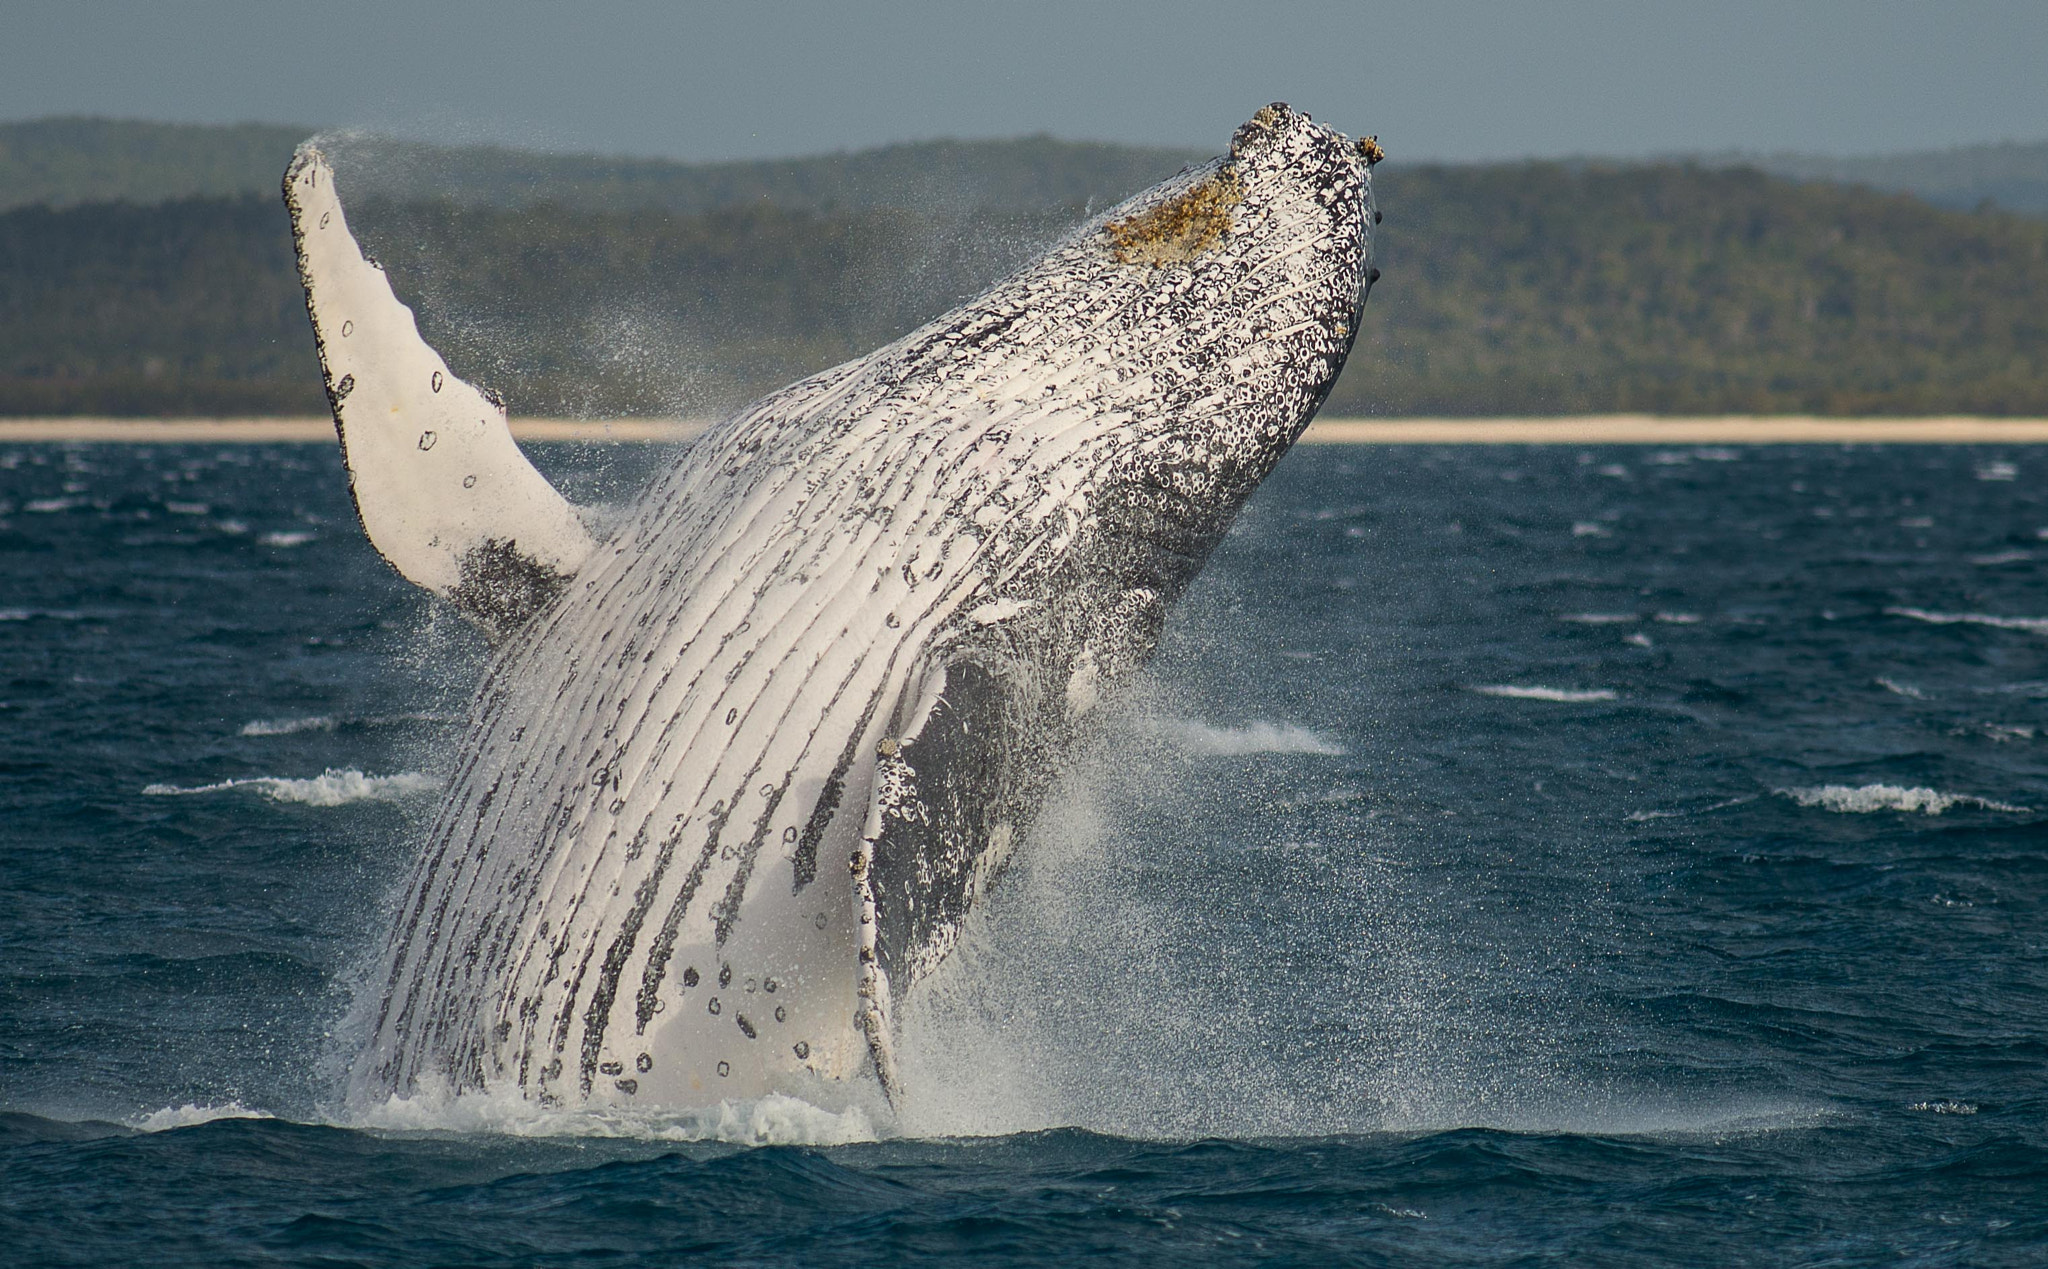 Nikon D600 + Tokina AT-X 304 AF (AF 300mm f/4.0) sample photo. Whales at hervey bay australia photography